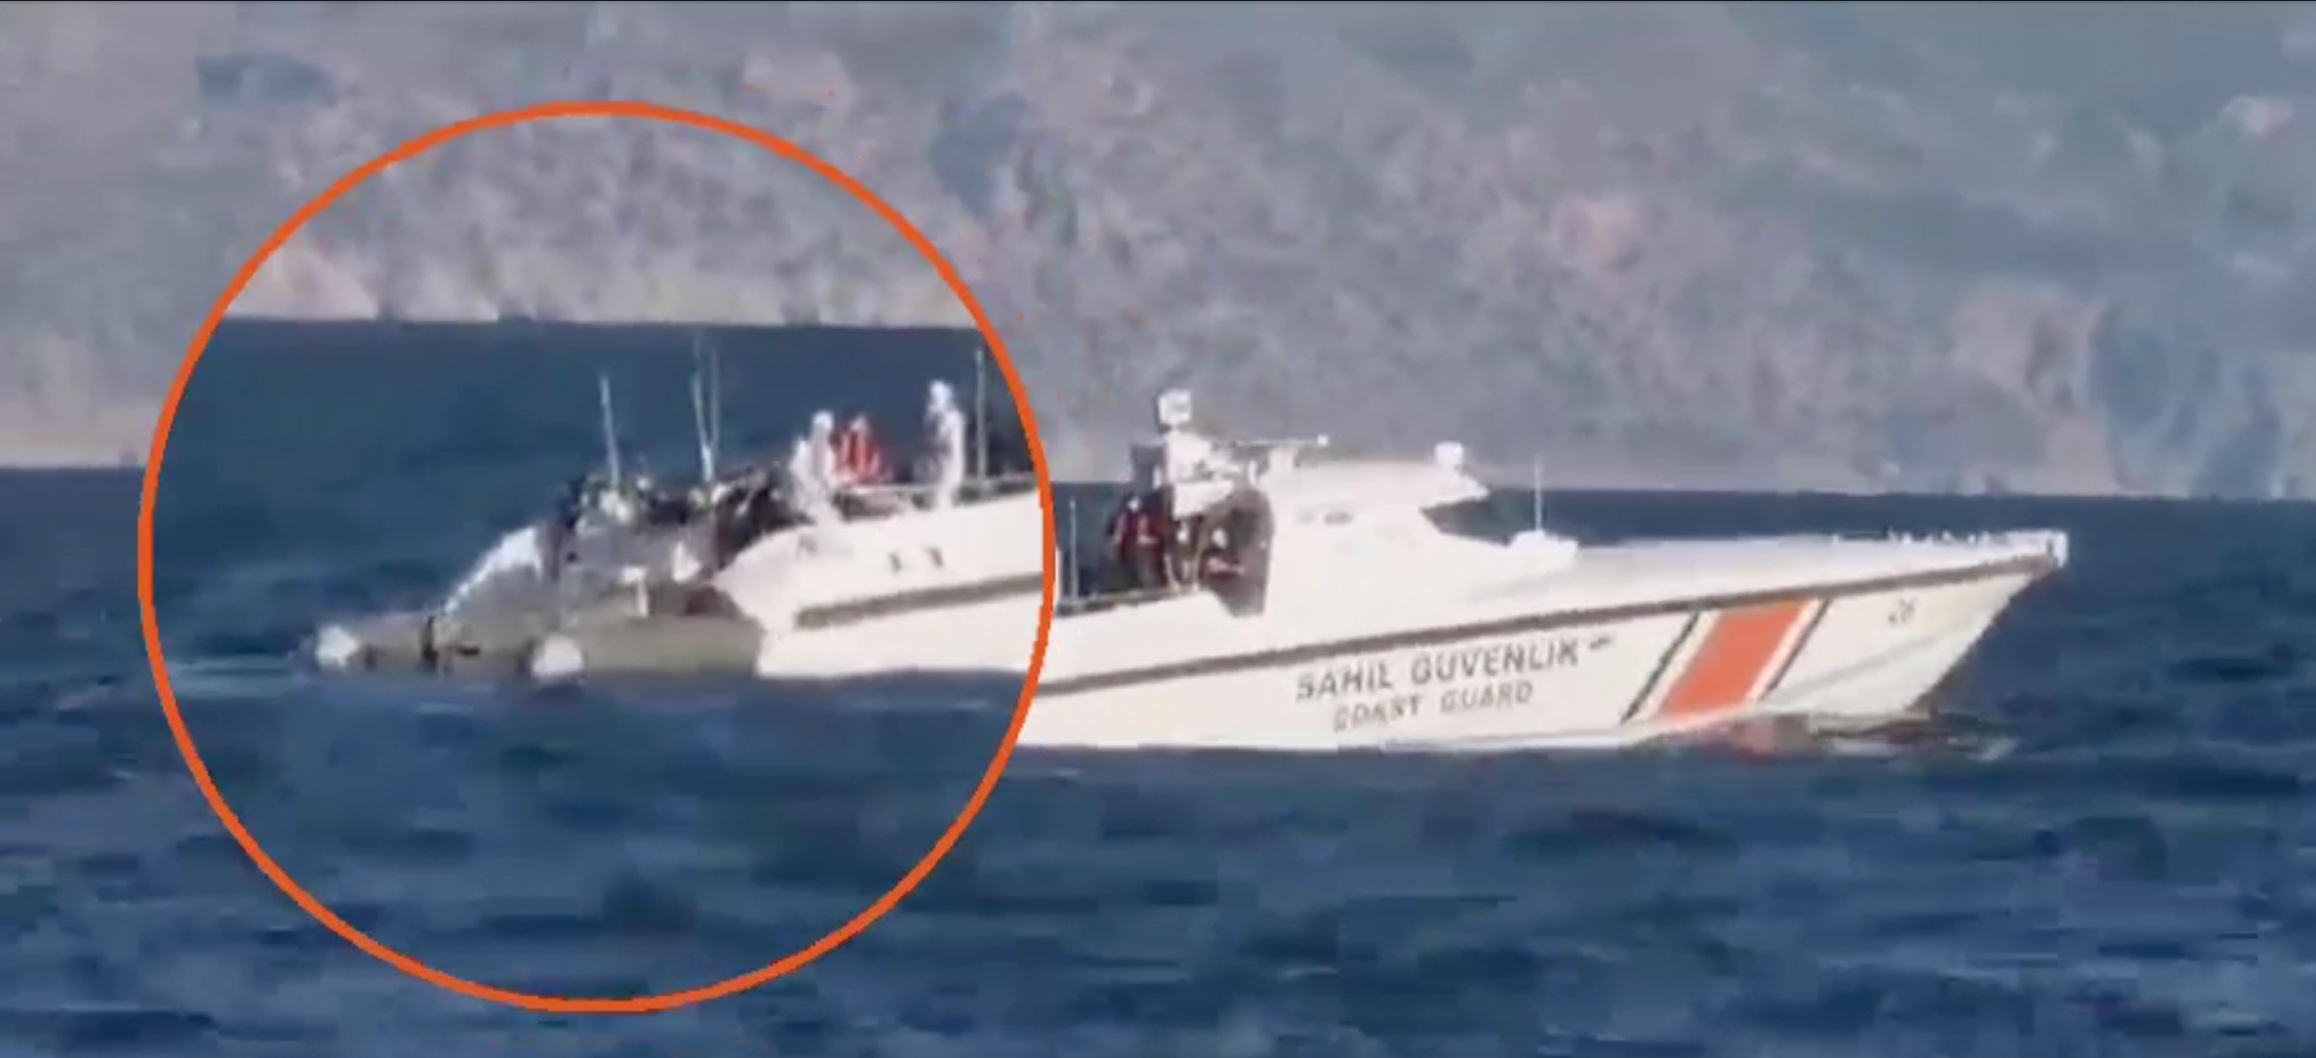 Τουρκική Ακταιωρός επιχείρησε να εμβολίσει σκάφος του Λ/Σ...Αλλά την έριξαν στα Απόνερα!! (vid) -veteranos |Εθνικά Θέματα